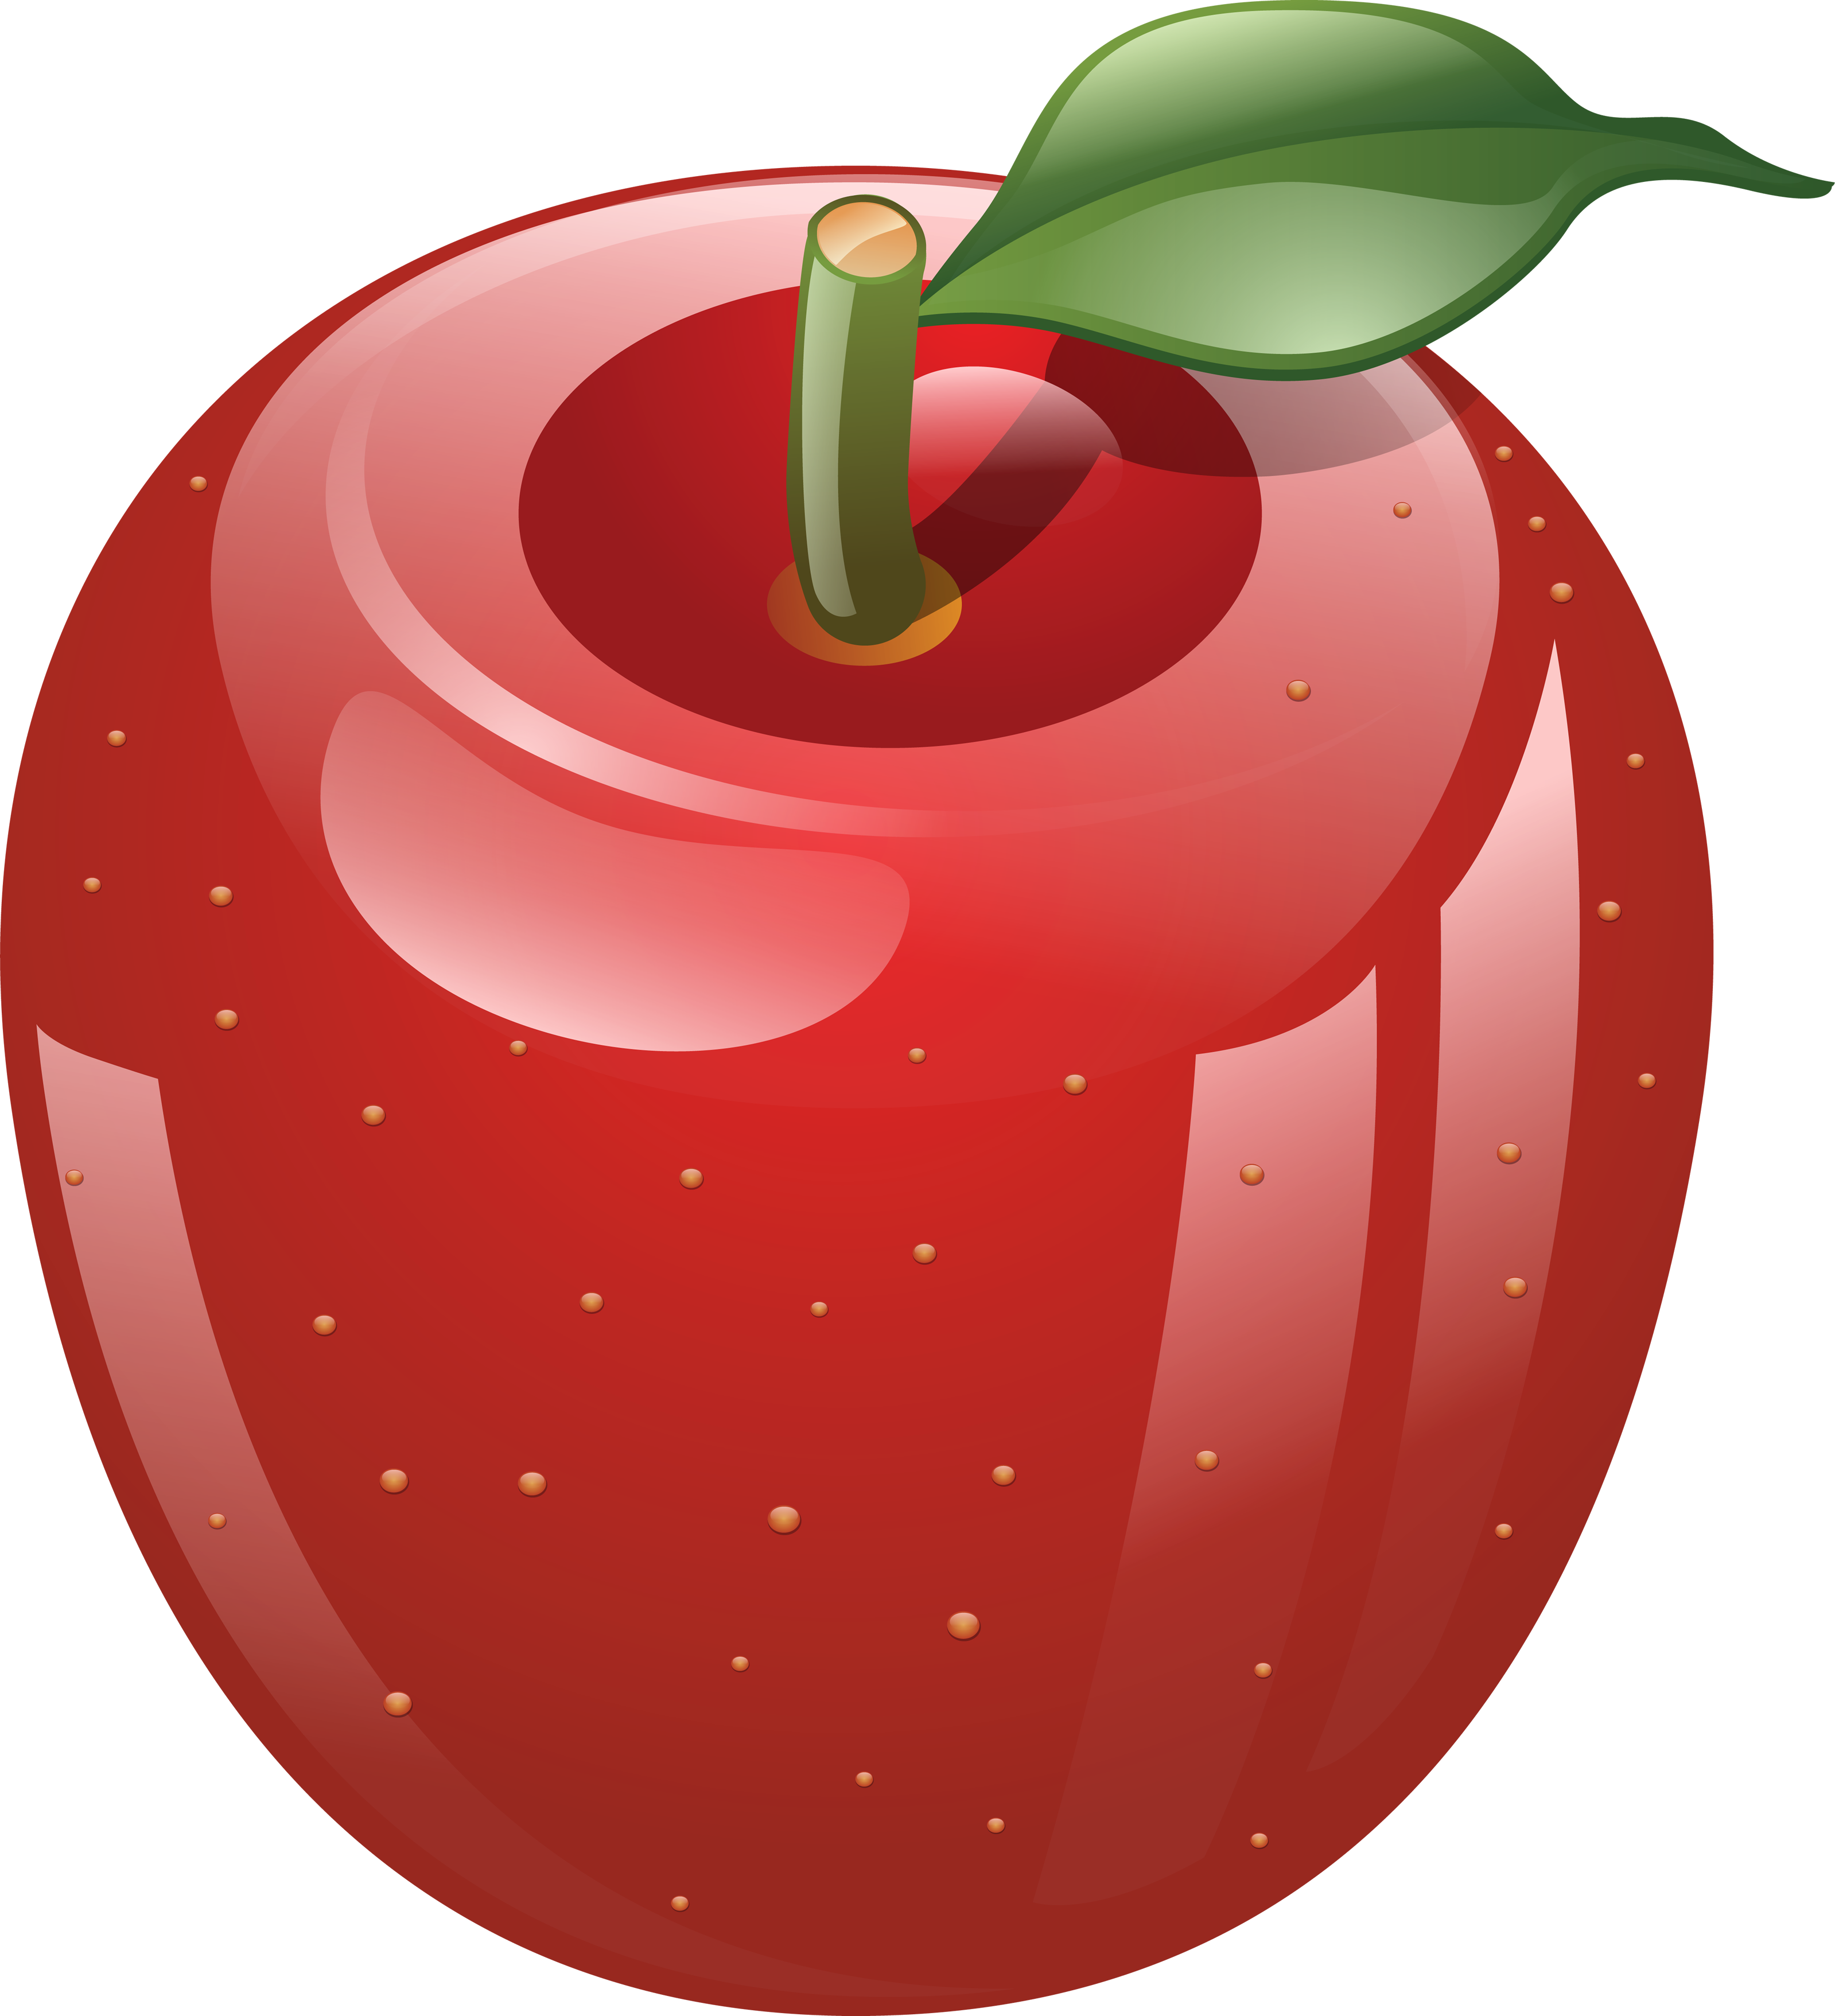 Gambar apel merah